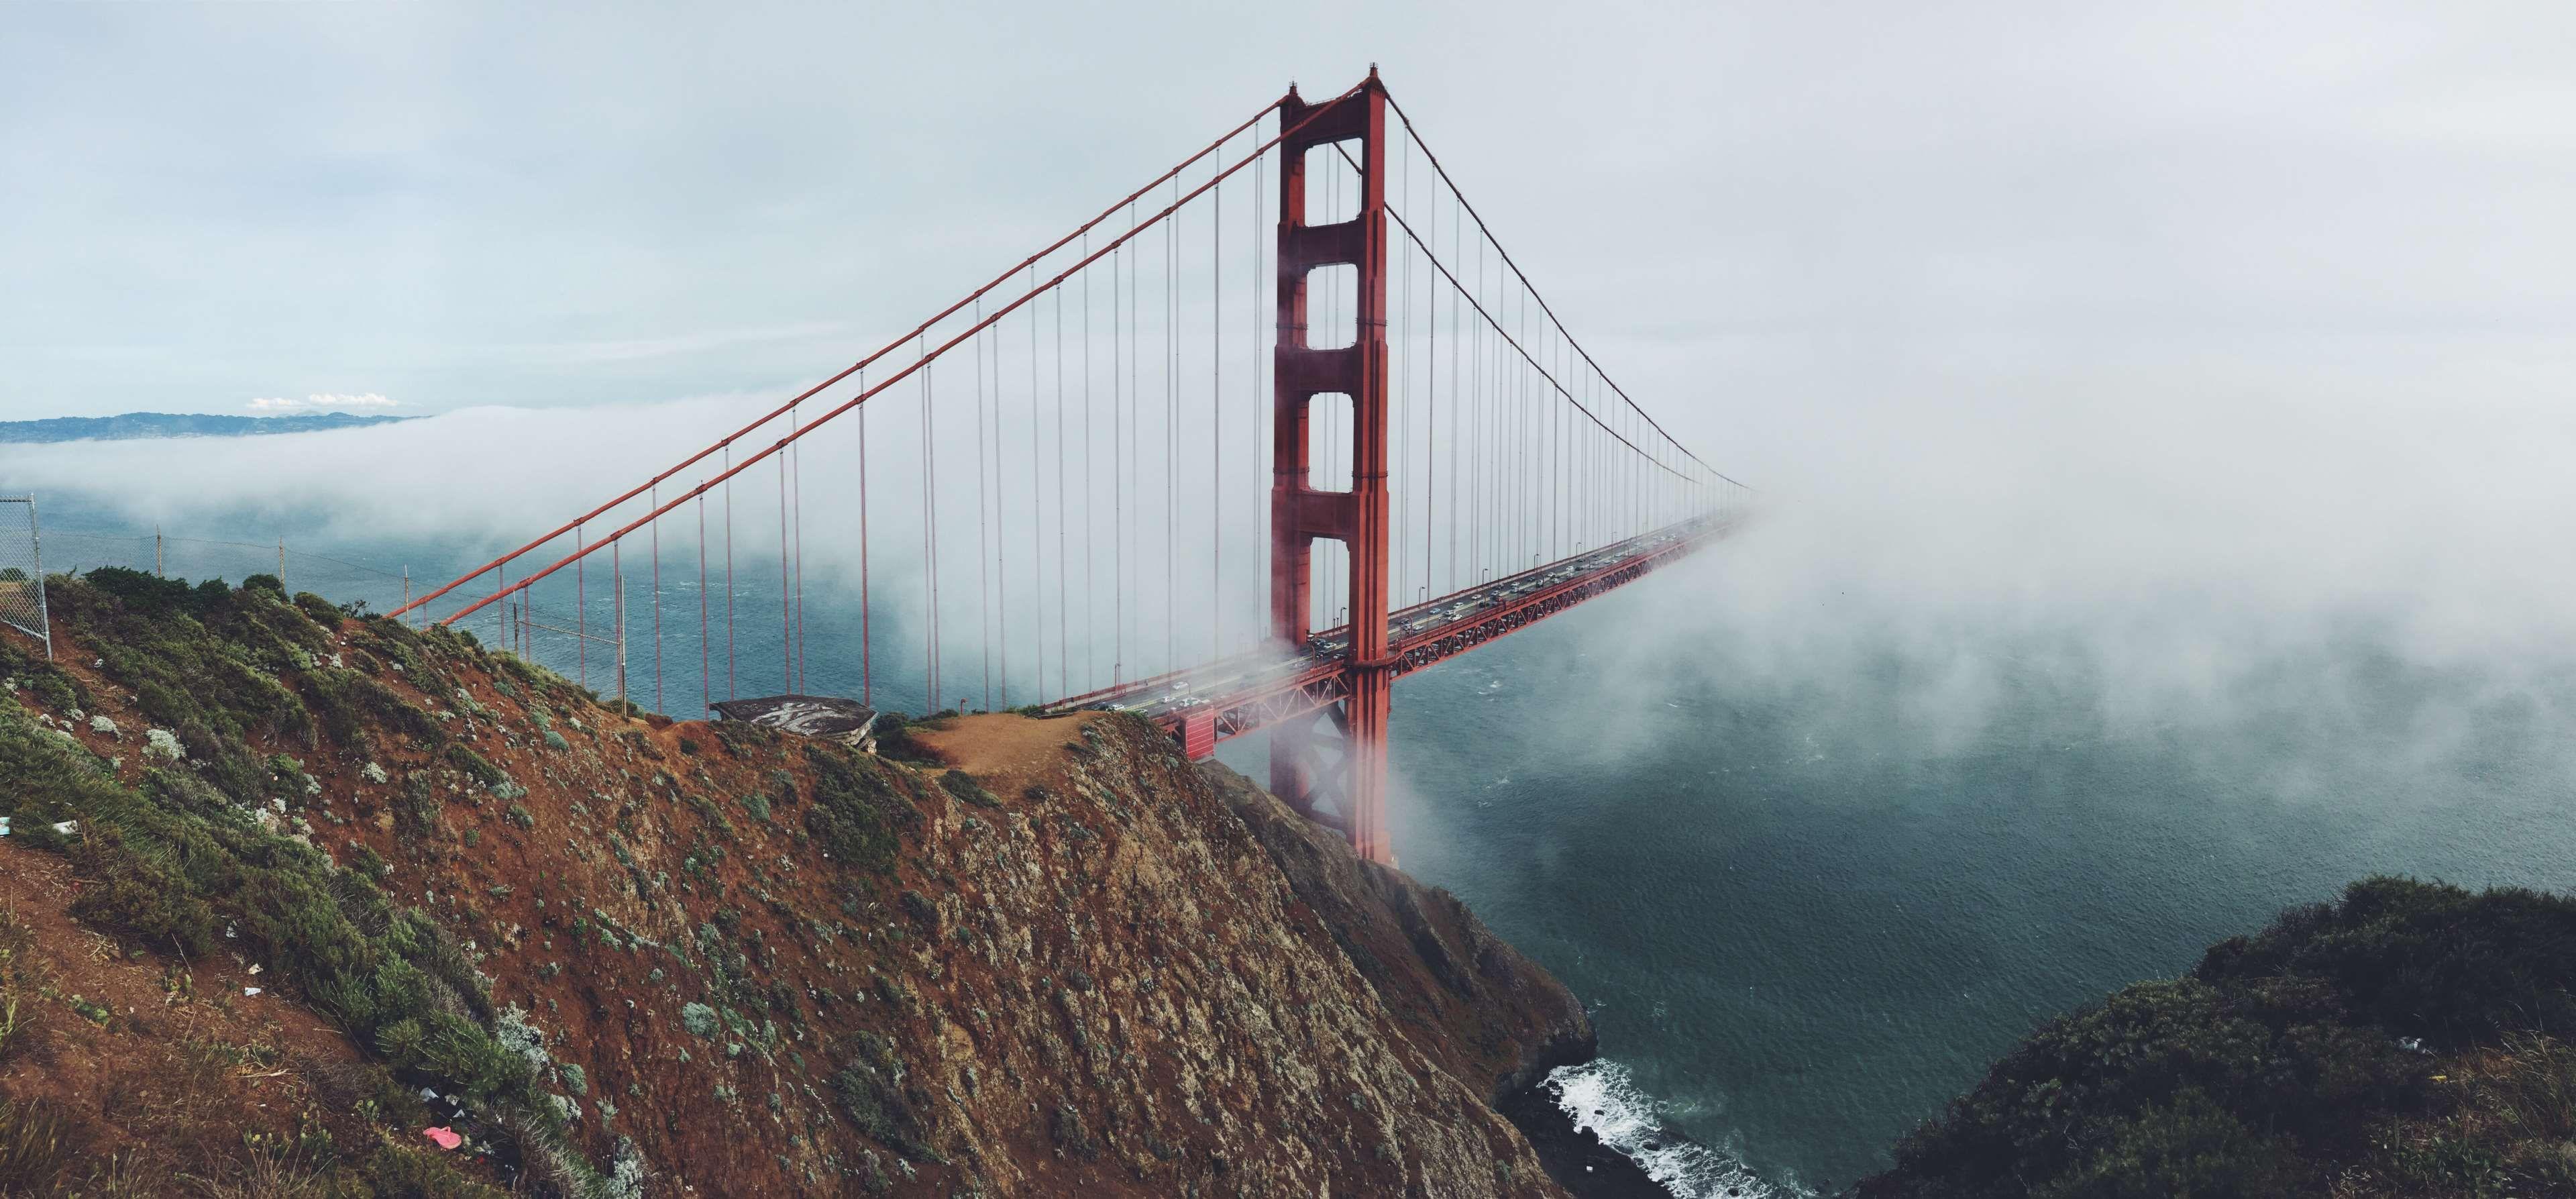 Golden Gate Bridge: Khung cảnh tuyệt đẹp của Golden Gate Bridge luôn là sự lựa chọn hàng đầu cho những ai yêu thích du lịch. Hãy cùng chúng tôi tha hồ ngắm nhìn cầu Đại Lợi lộng lẫy về đêm hoặc trong bình minh, bởi nơi đây không ngừng thay đổi trong ánh nắng và màu sắc.